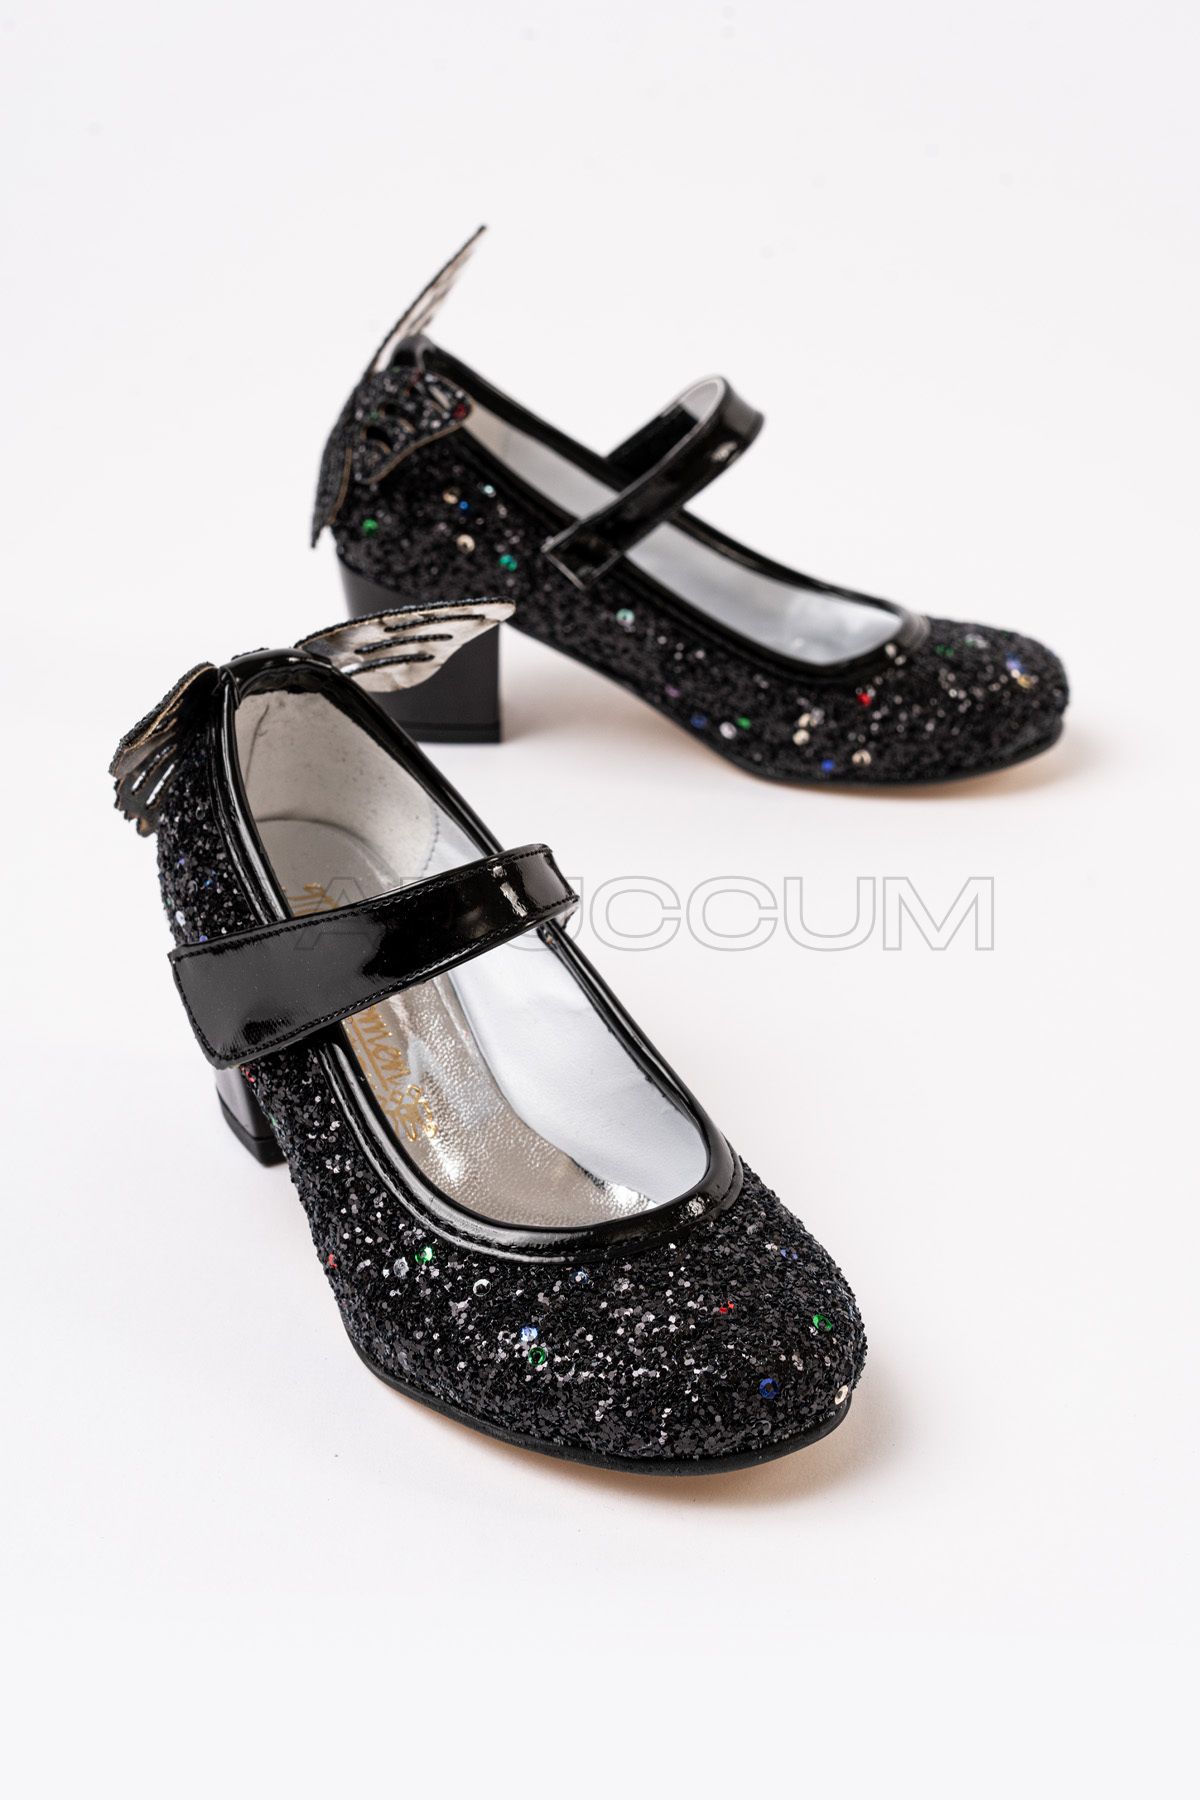 p papuccum ortopedi çocuk ayakkabıları Kız Çocuk Siyah Kelebekli Topuklu Abiye Ayakkabı